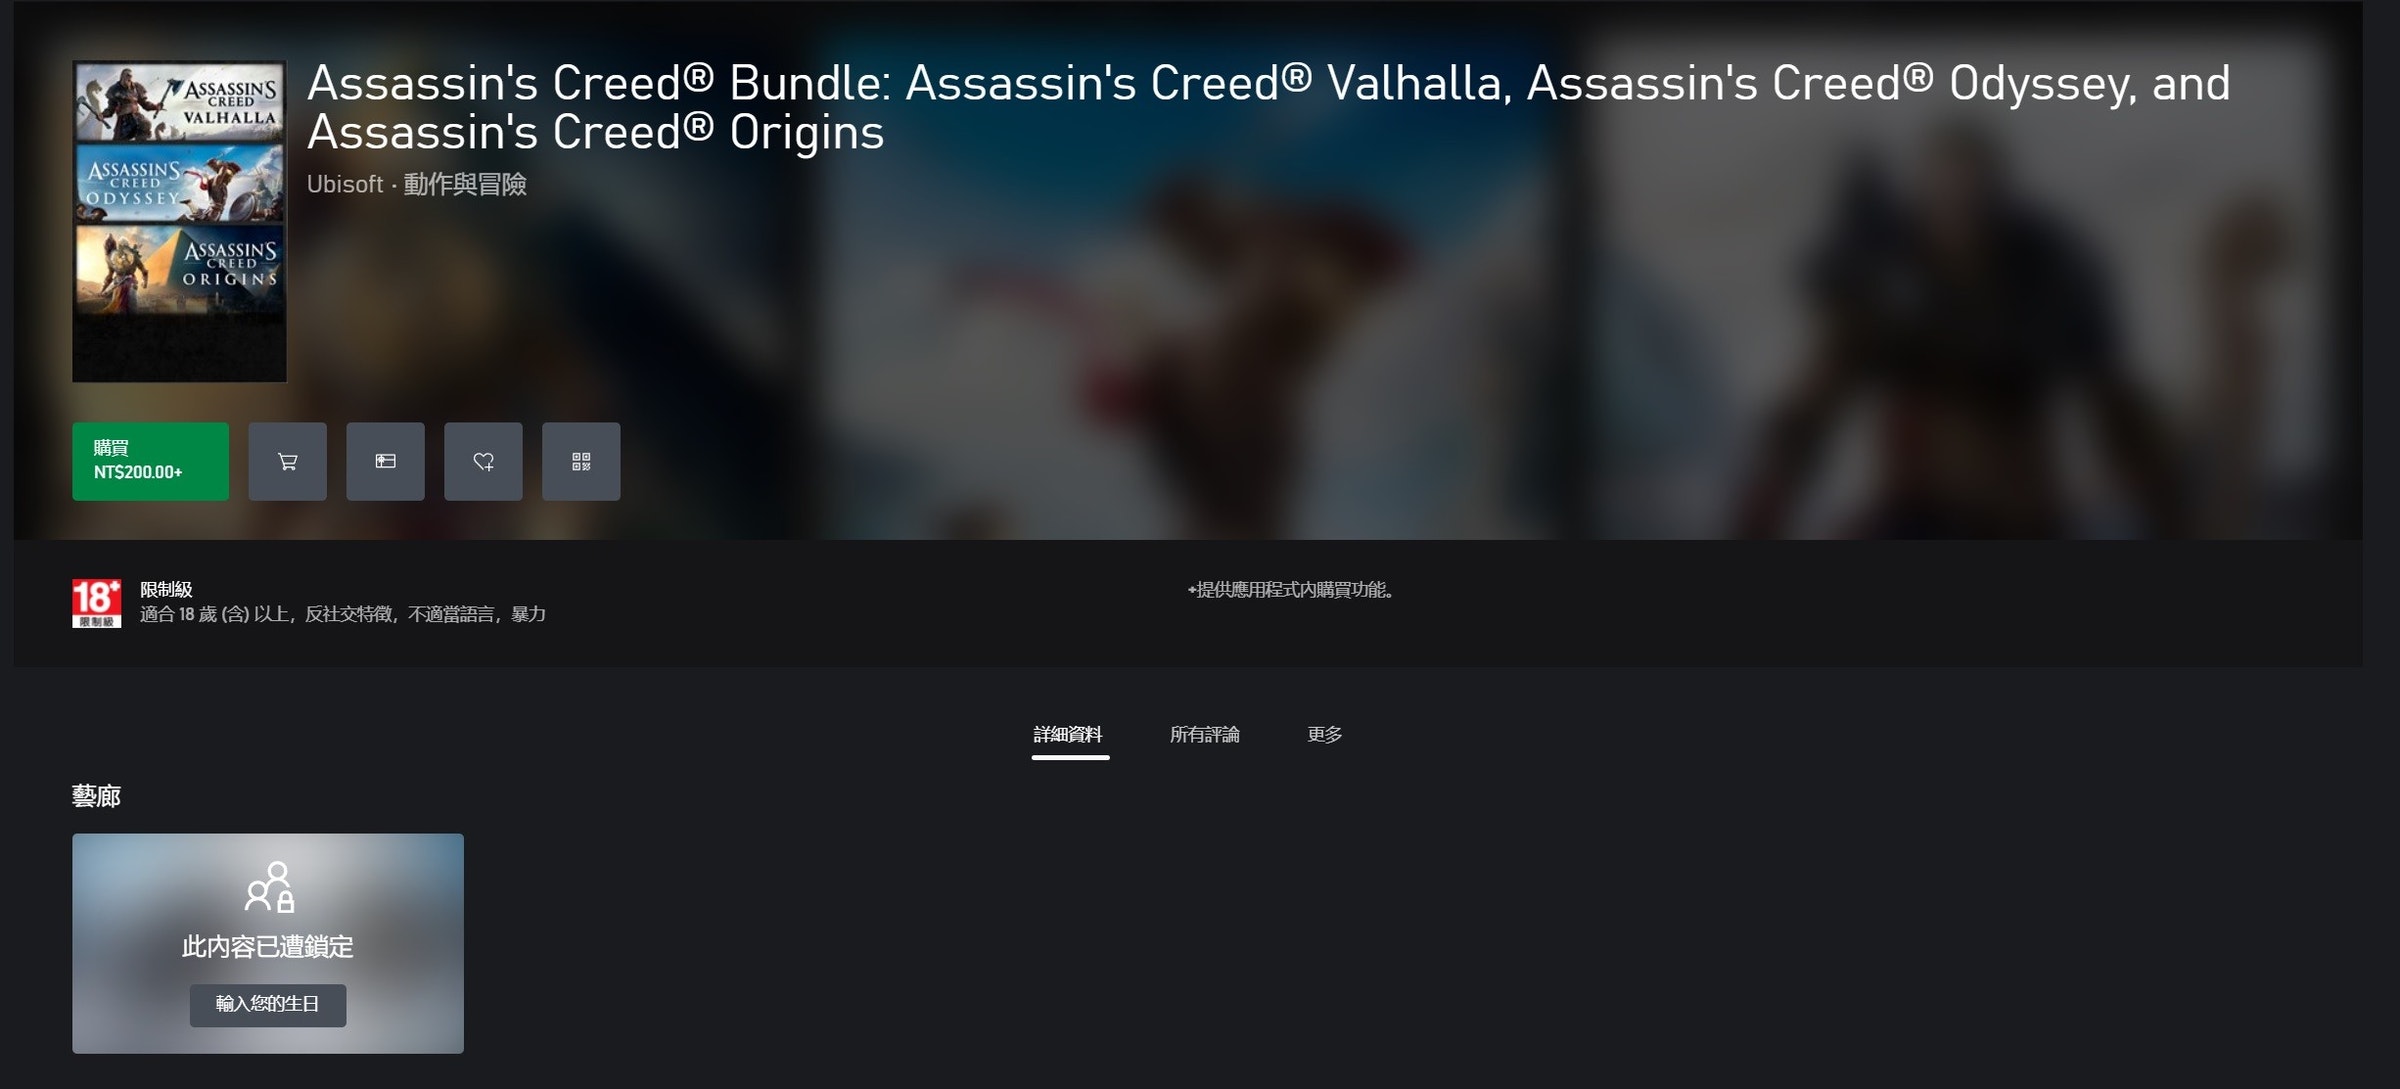 照片中提到了ASASINS Assassin's Creed® Bundle: Assassin's Creed® Valhalla, Assassin's Creed® Odyssey, and、Assassin's Creed® Origins、CREED，包含了視頻、音樂視頻、的YouTube、我的寶貝來了、像你一樣愛我